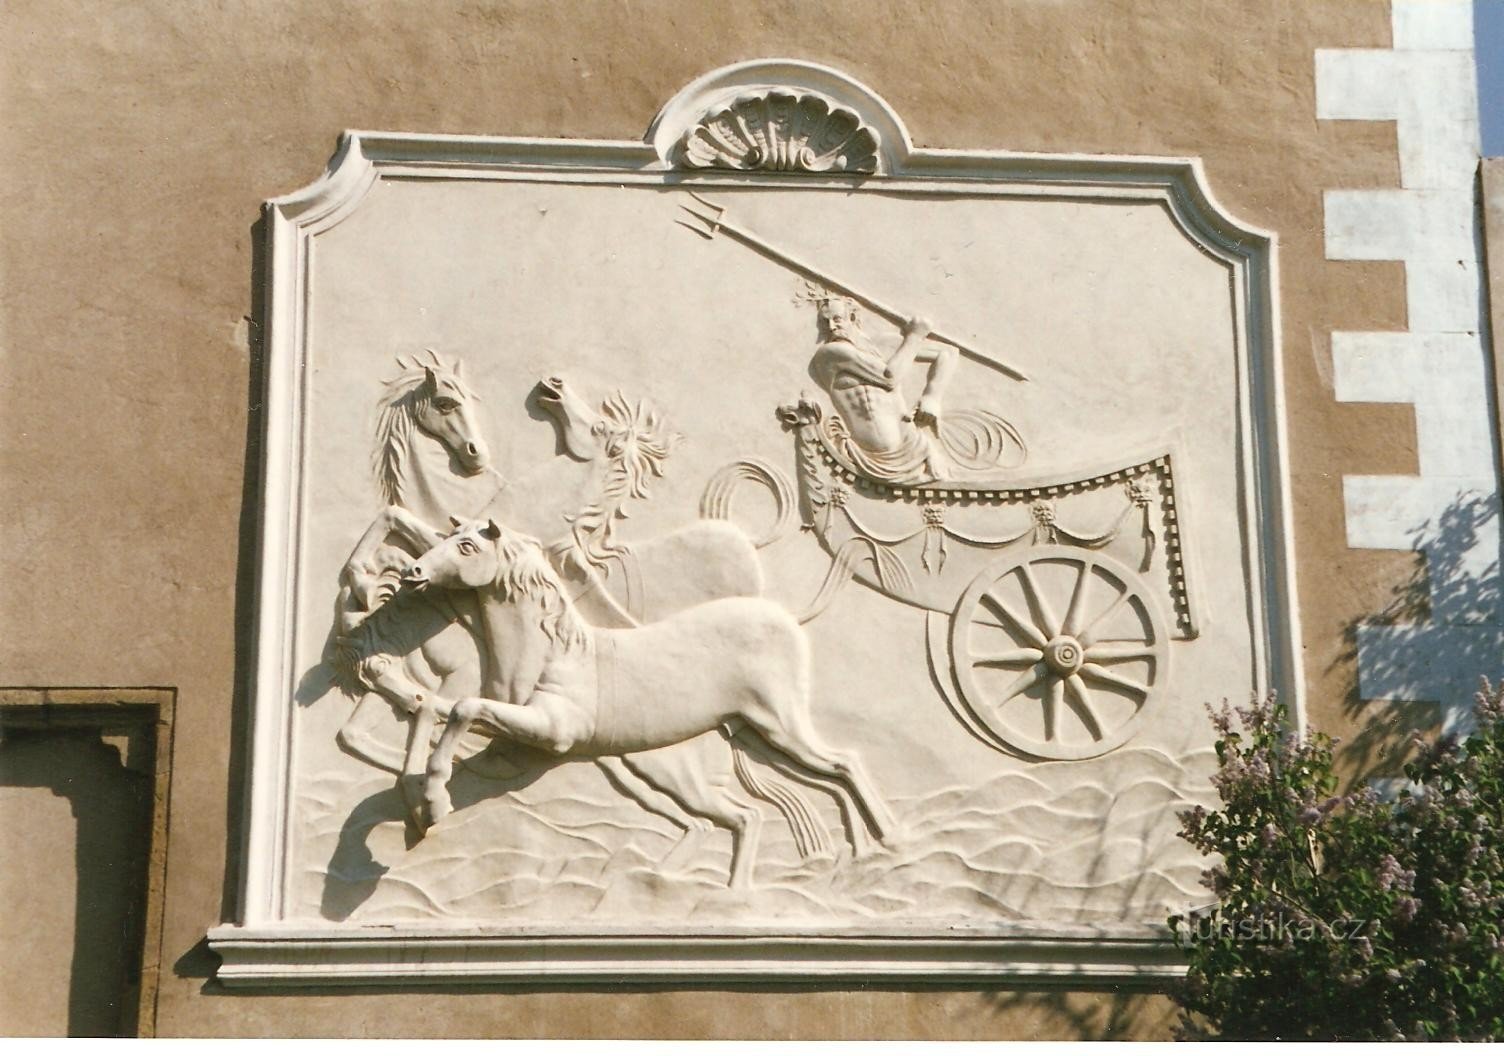 Telč - castle garden - relief of Neptune with a four-wheeler